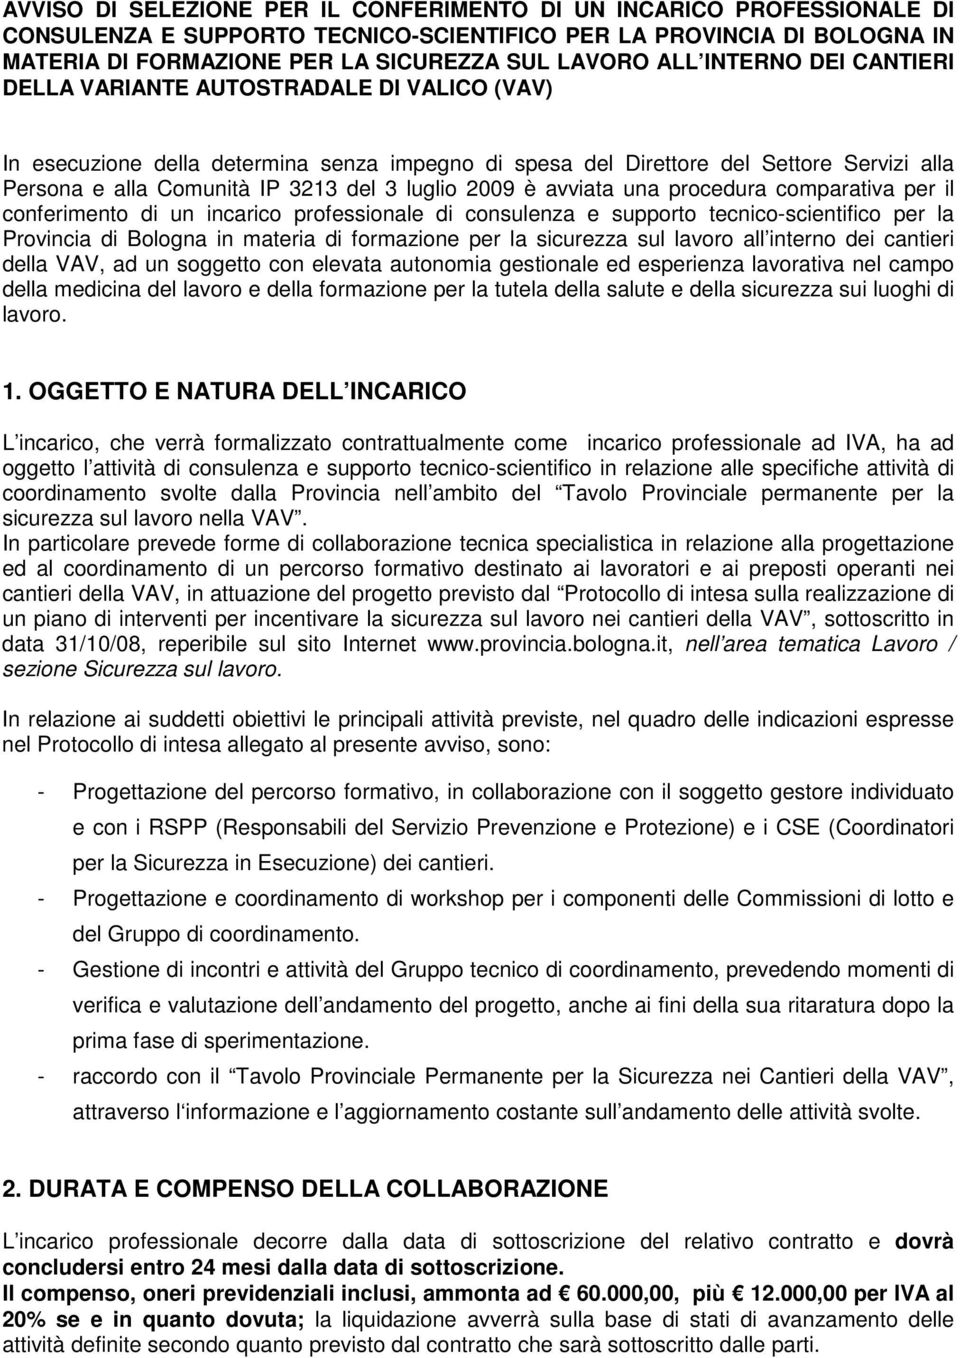 luglio 2009 è avviata una procedura comparativa per il conferimento di un incarico professionale di consulenza e supporto tecnico-scientifico per la Provincia di Bologna in materia di formazione per